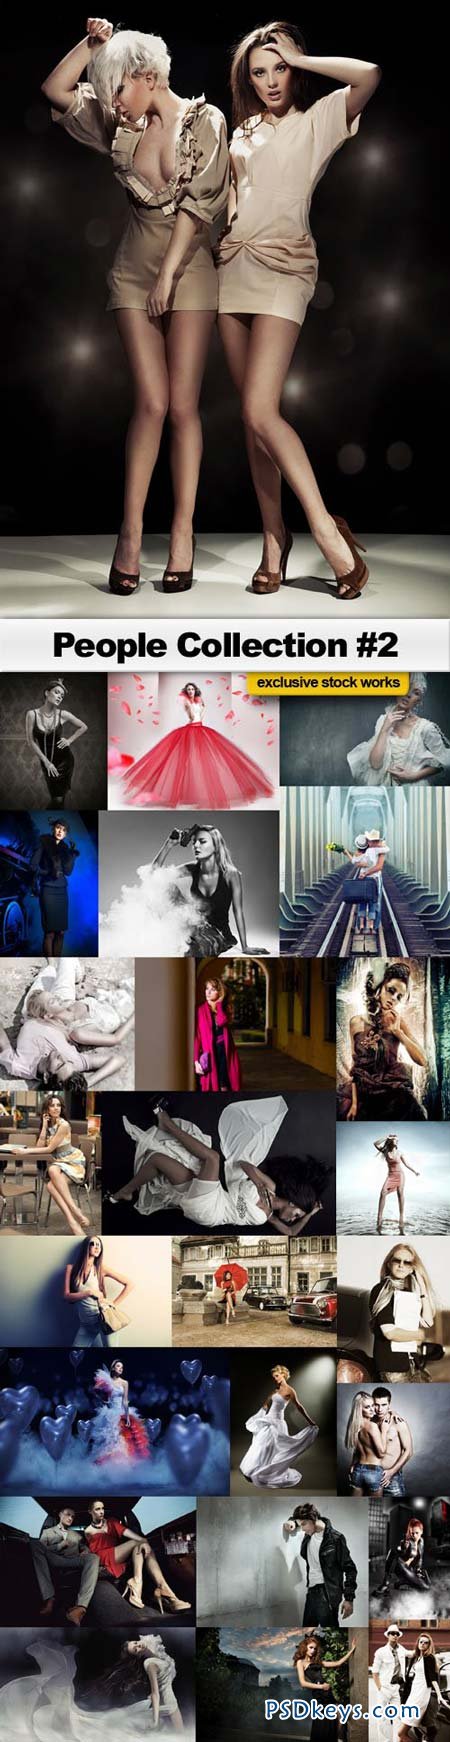 People Collection #2 - 25xJPEG